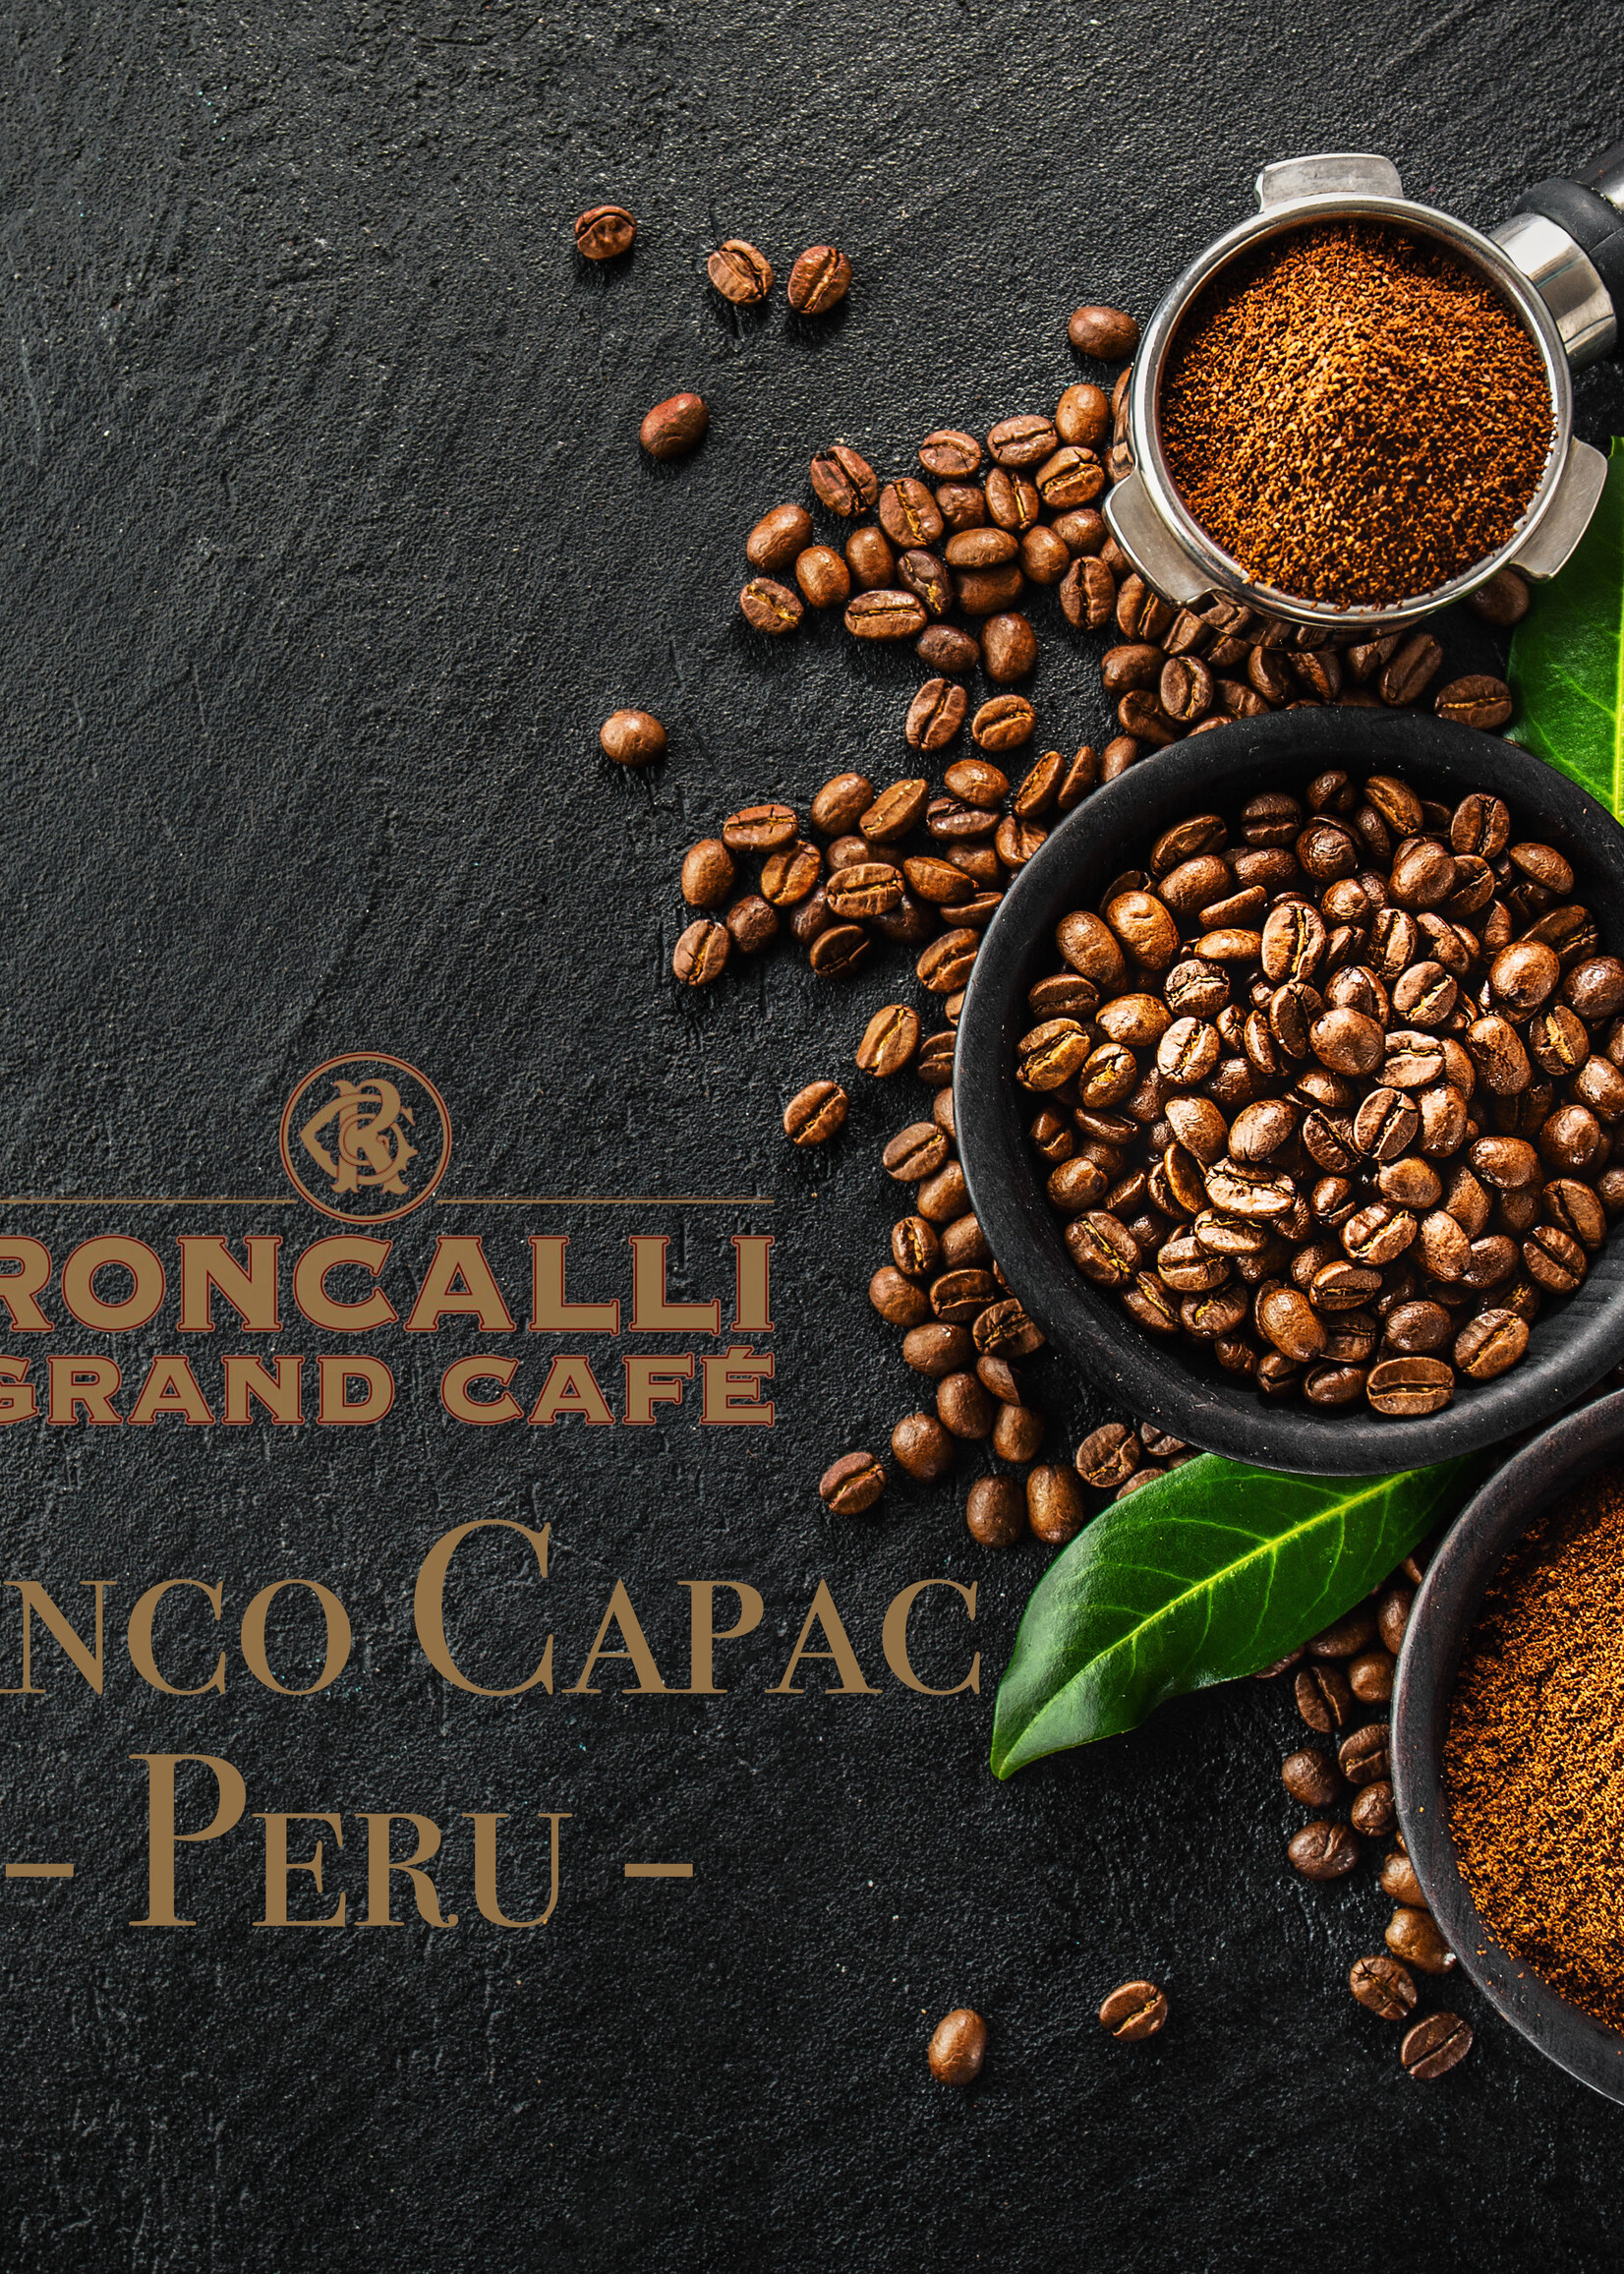 Roncalli Grand Café Peru - Manco Capac